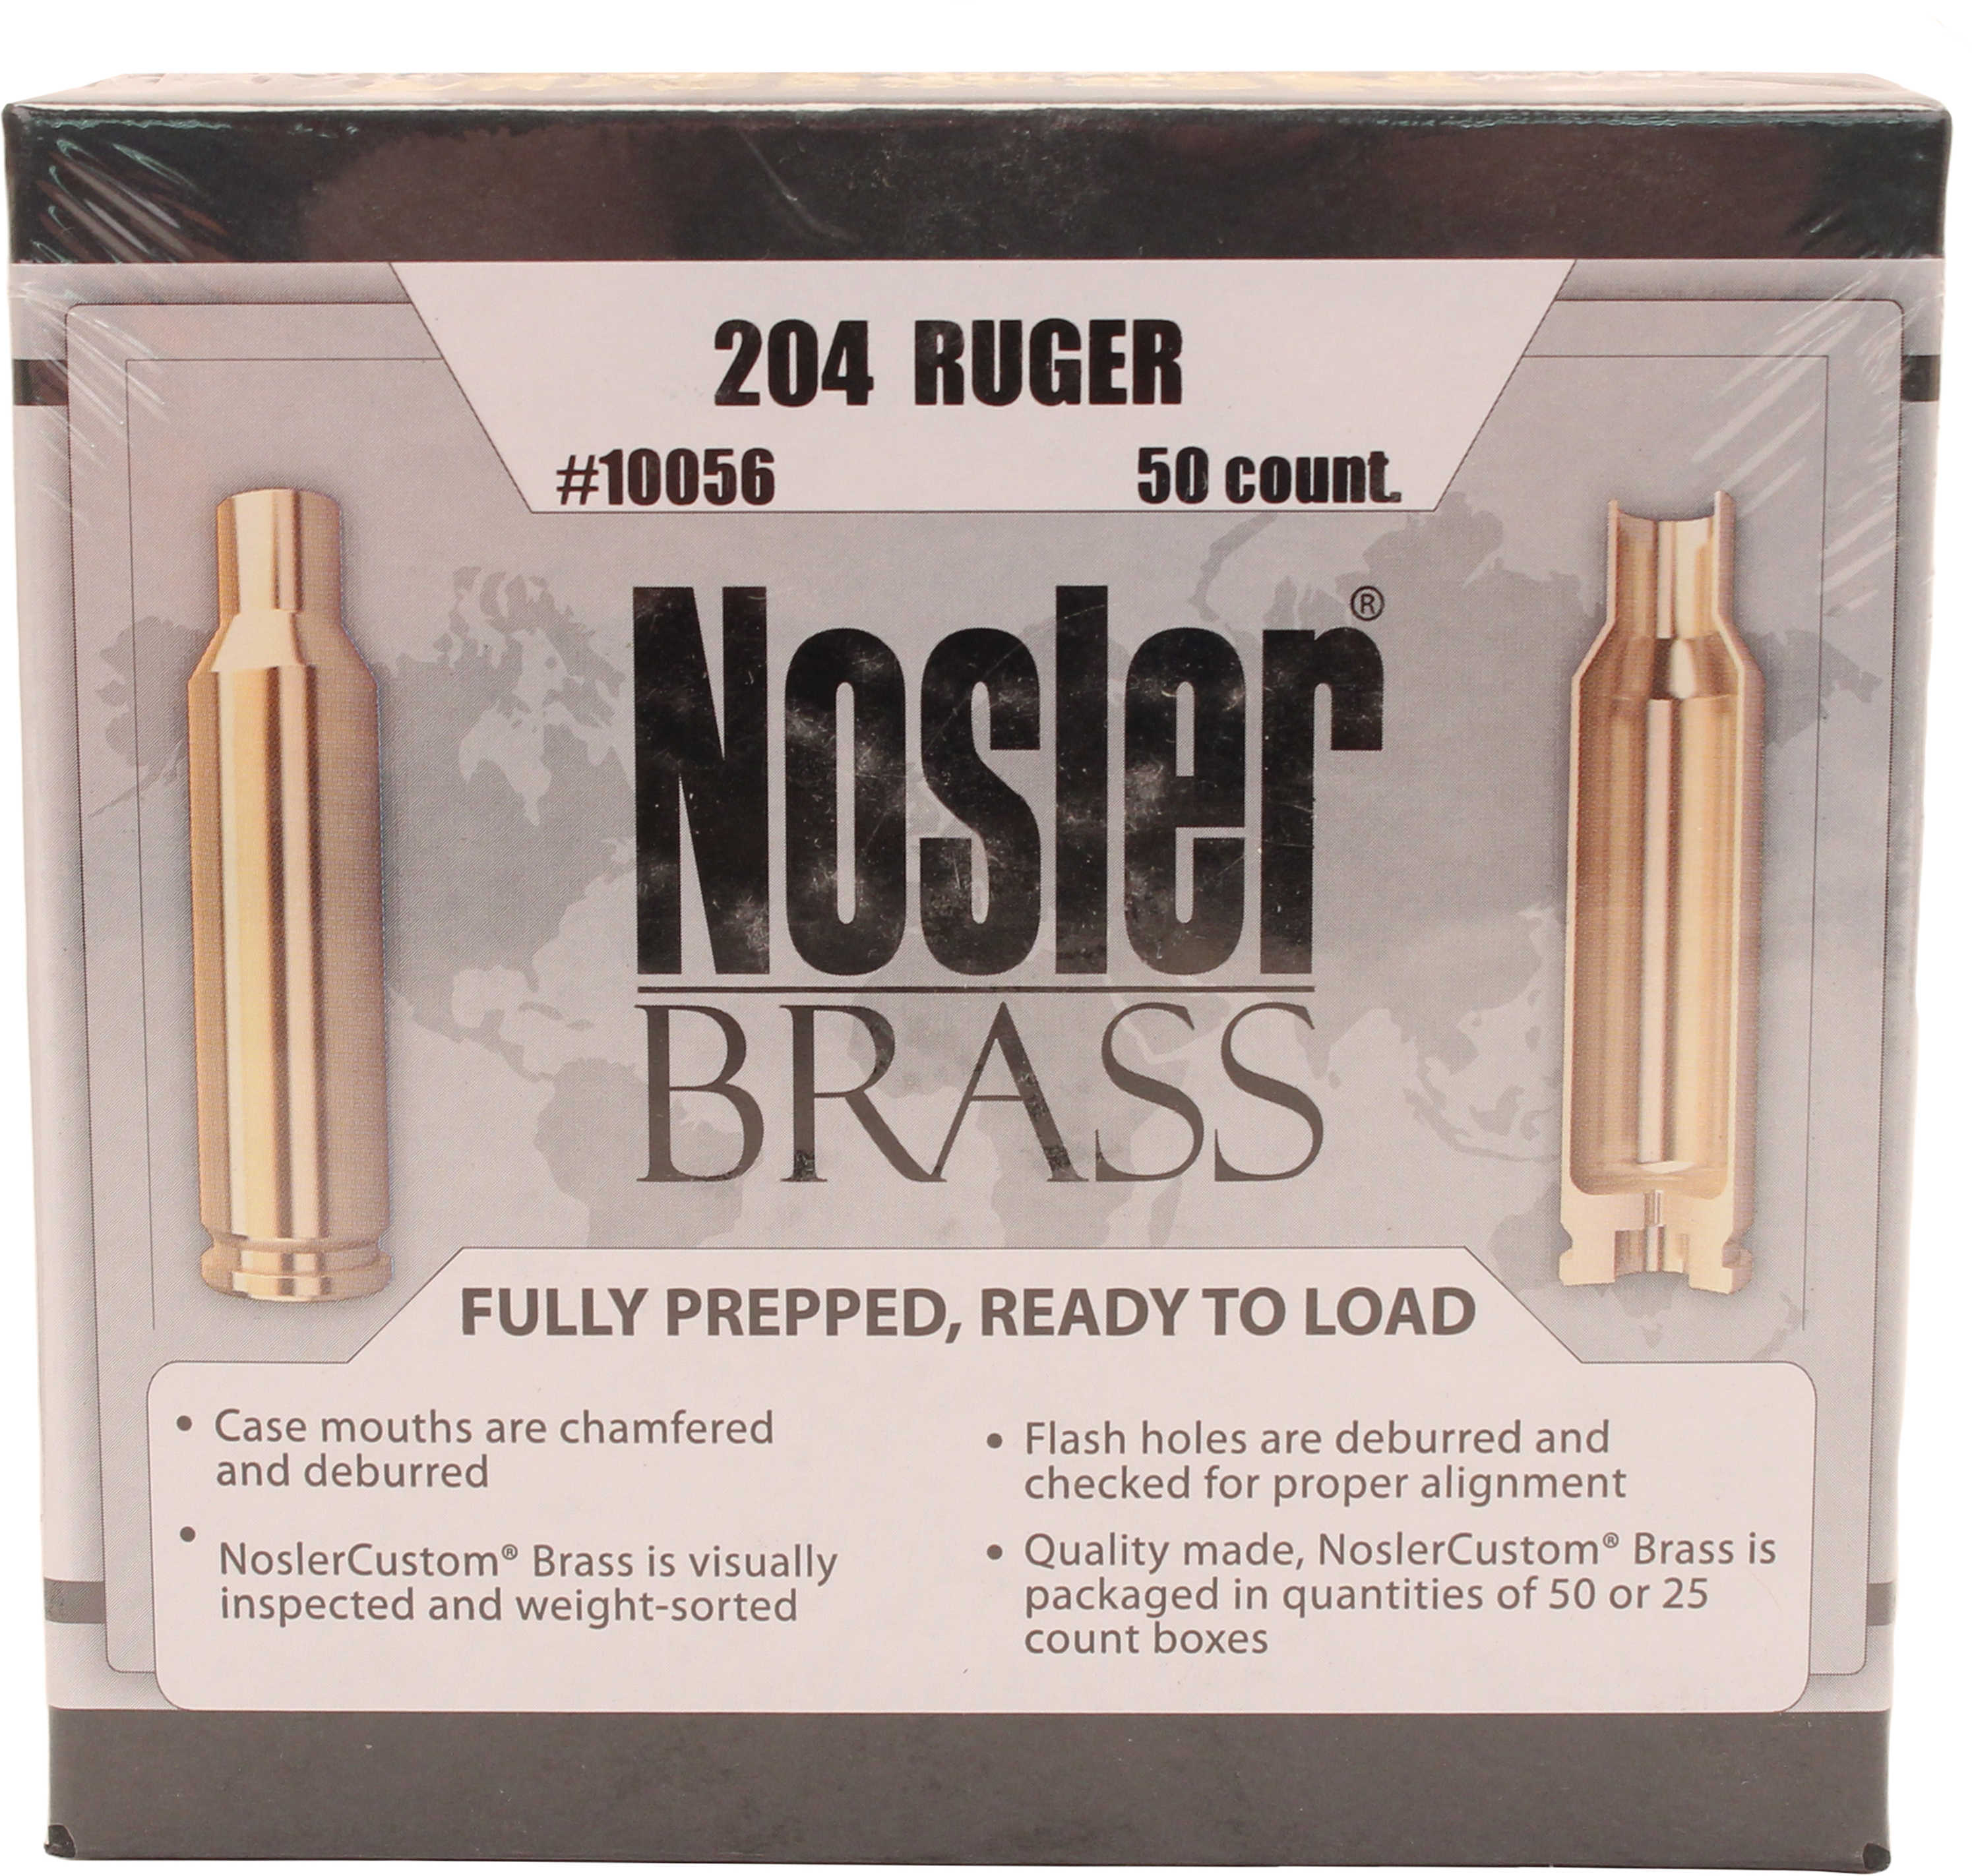 Nosler Custom Brass, 204 Ruger - Brand New In Package